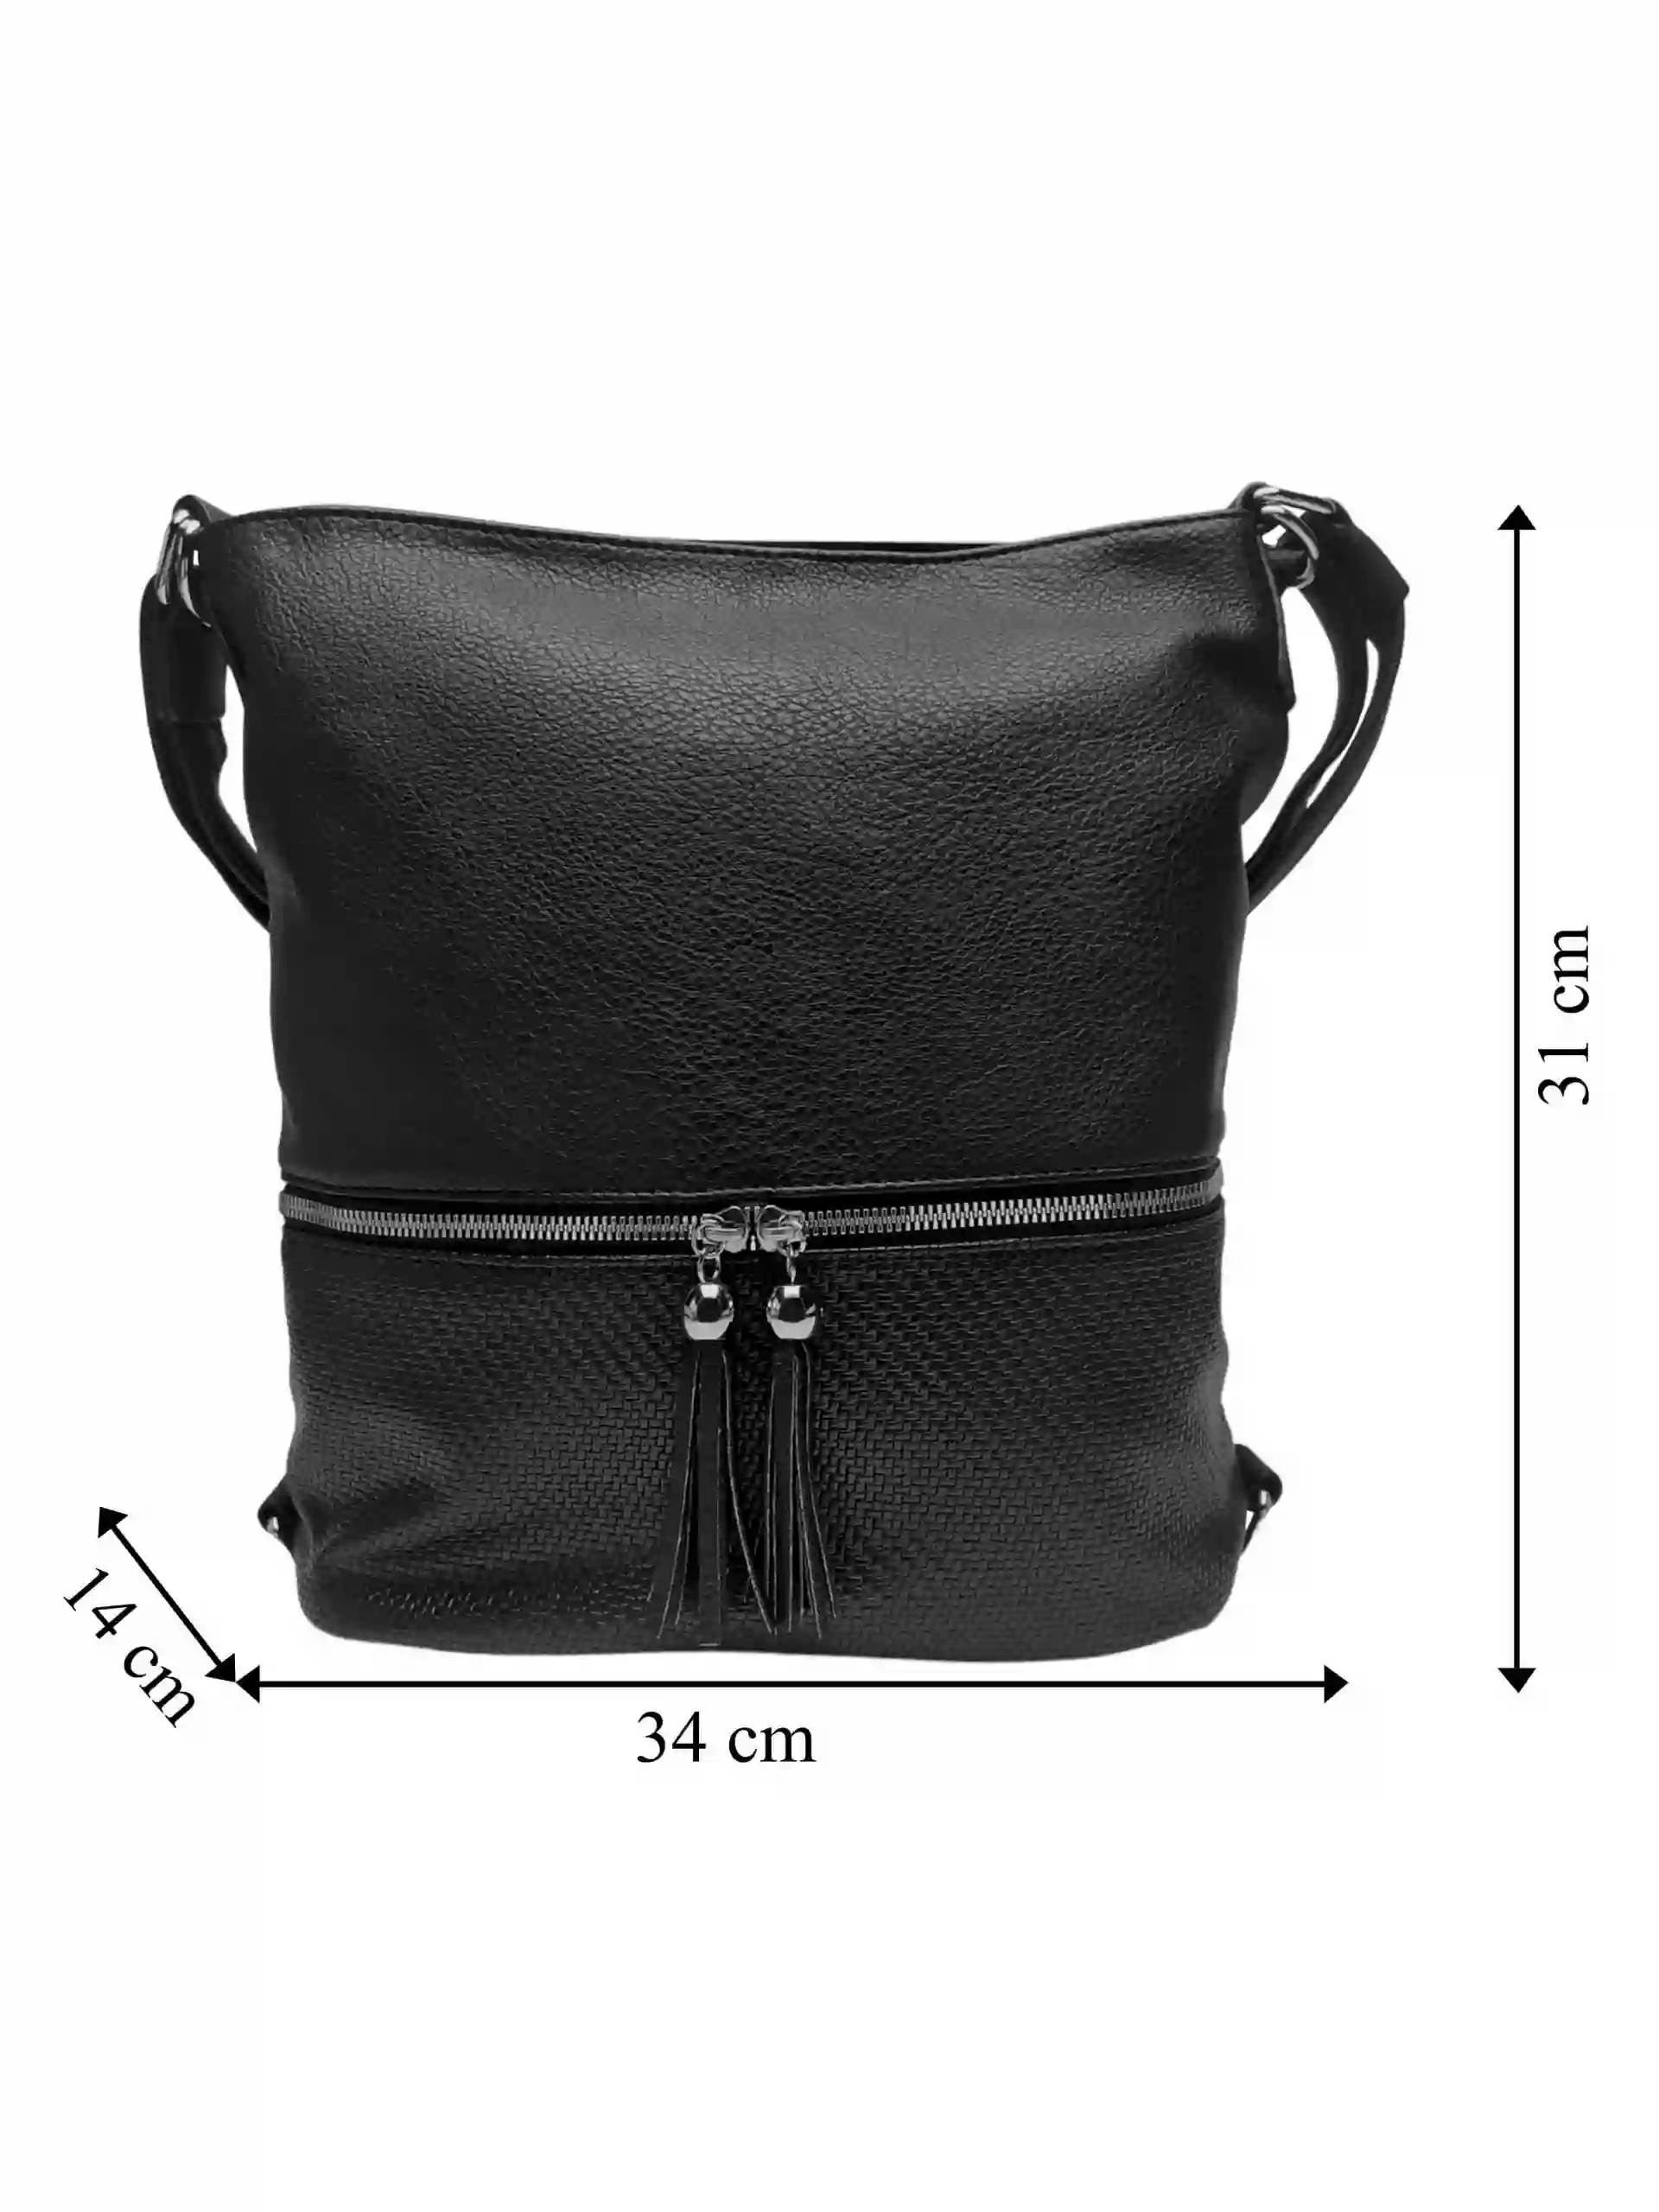 Střední černý kabelko-batoh 2v1 s třásněmi, Bella Belly, 5394, přední strana kabelko-batohu s rozměry